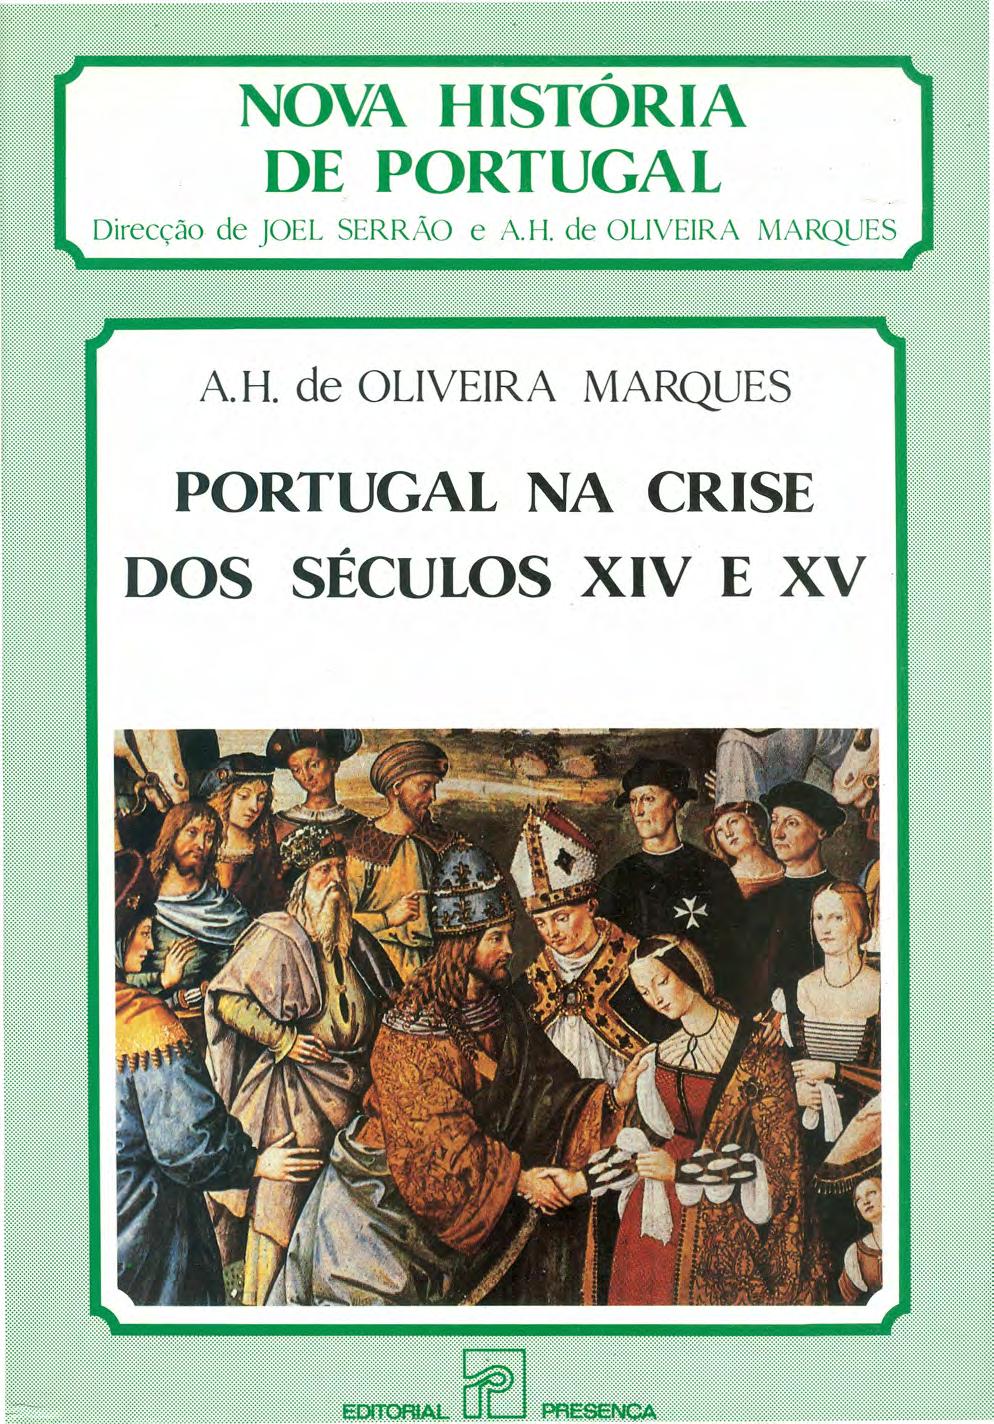 ~ NOVA HISTORIA DE PORTUGAL Direcção de joel SERRÃO e A. H. de OLIVEIRA MARQUES A.